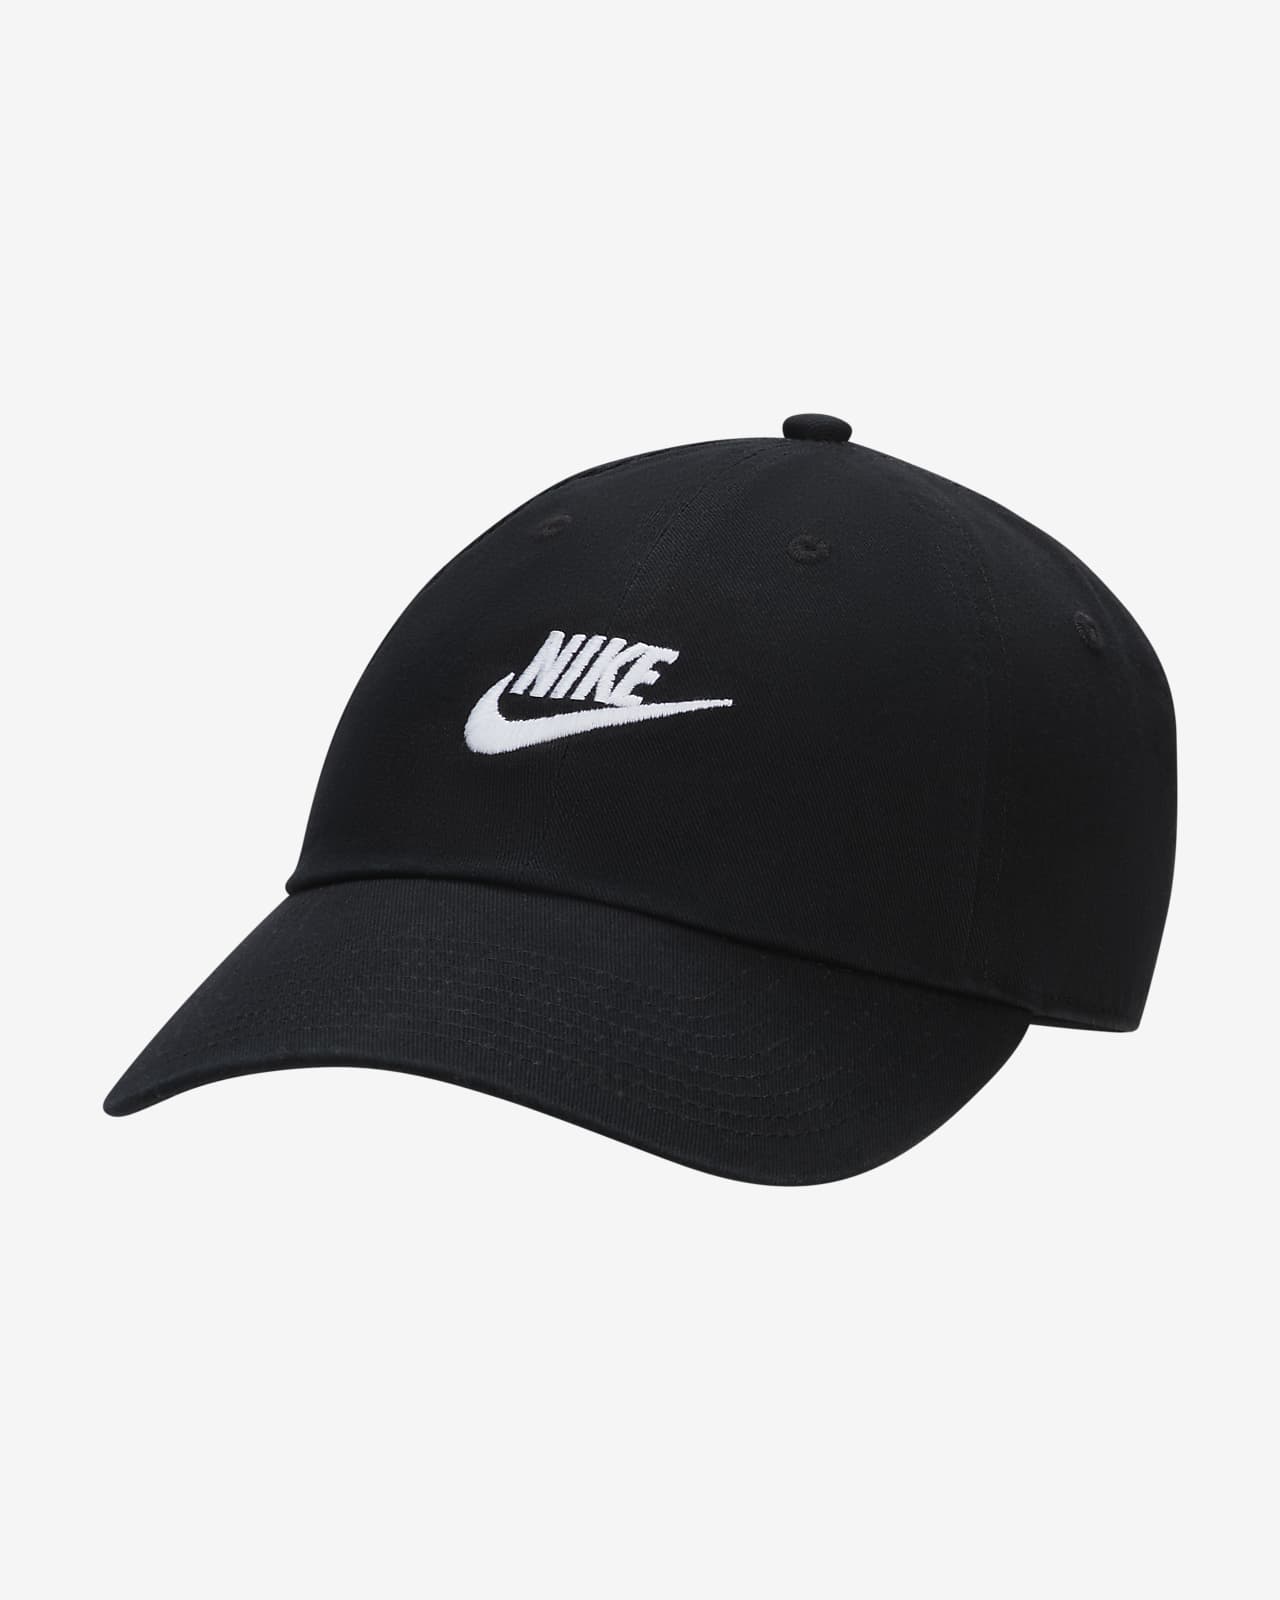 Club Nike Unstructured Futura Cap. Wash